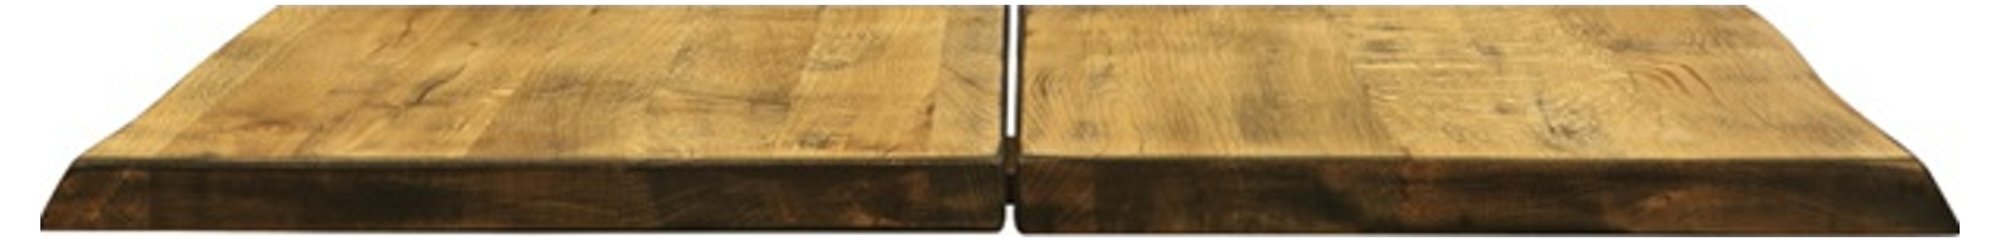 Hugin, Tillægsplade til Hugin plankebord, Egetræ by House of Sander (H: 4 cm. B: 95 cm. L: 50 cm., Vintage)